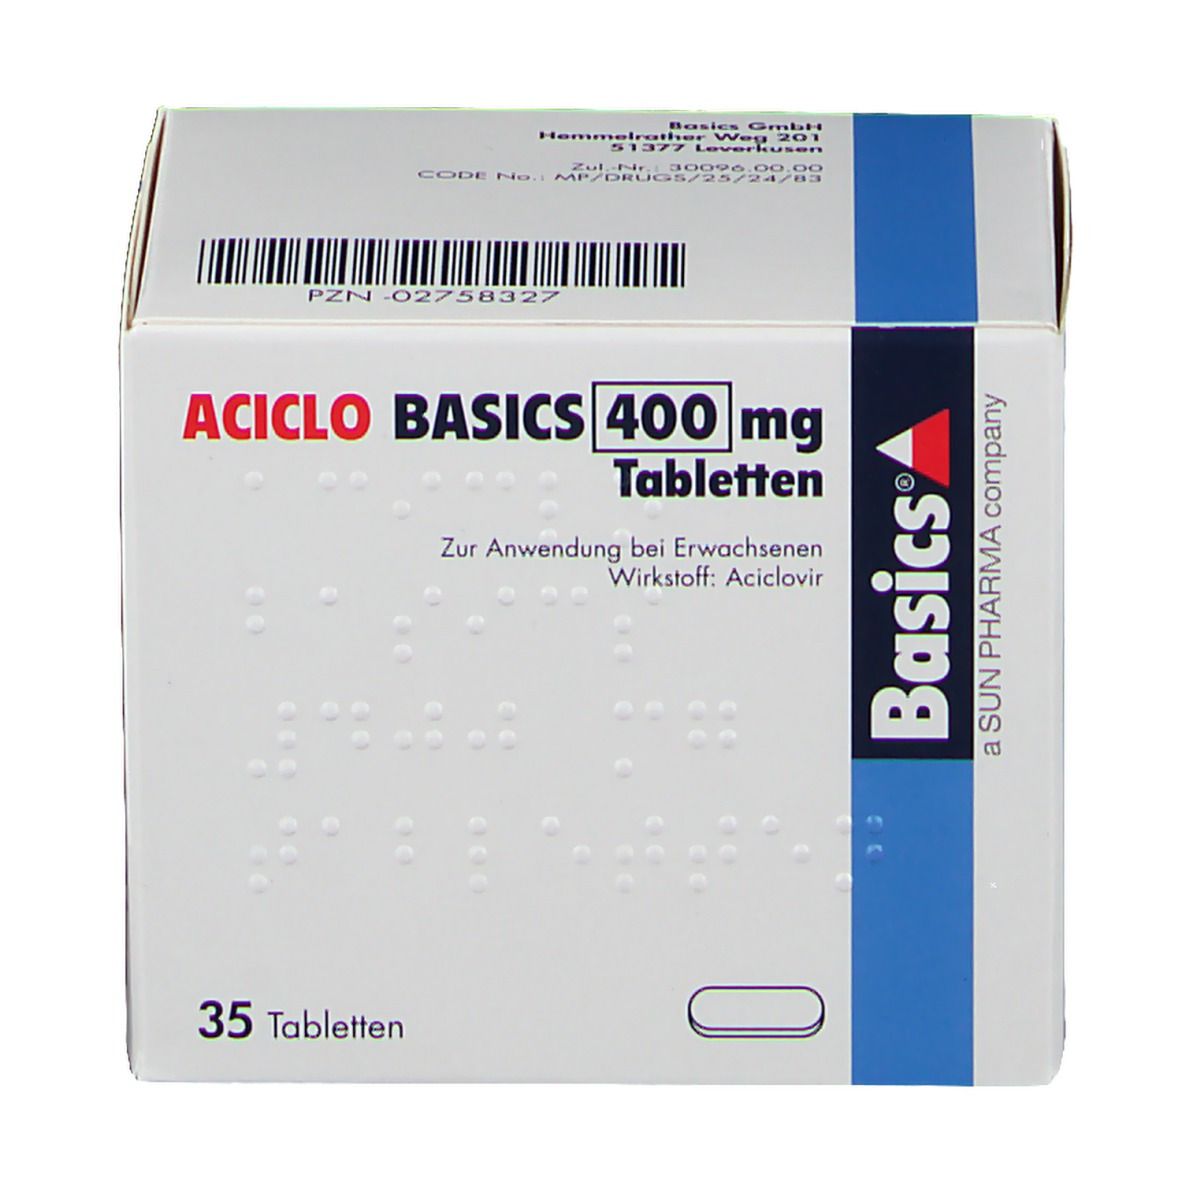 ACICLO BASICS 400 mg